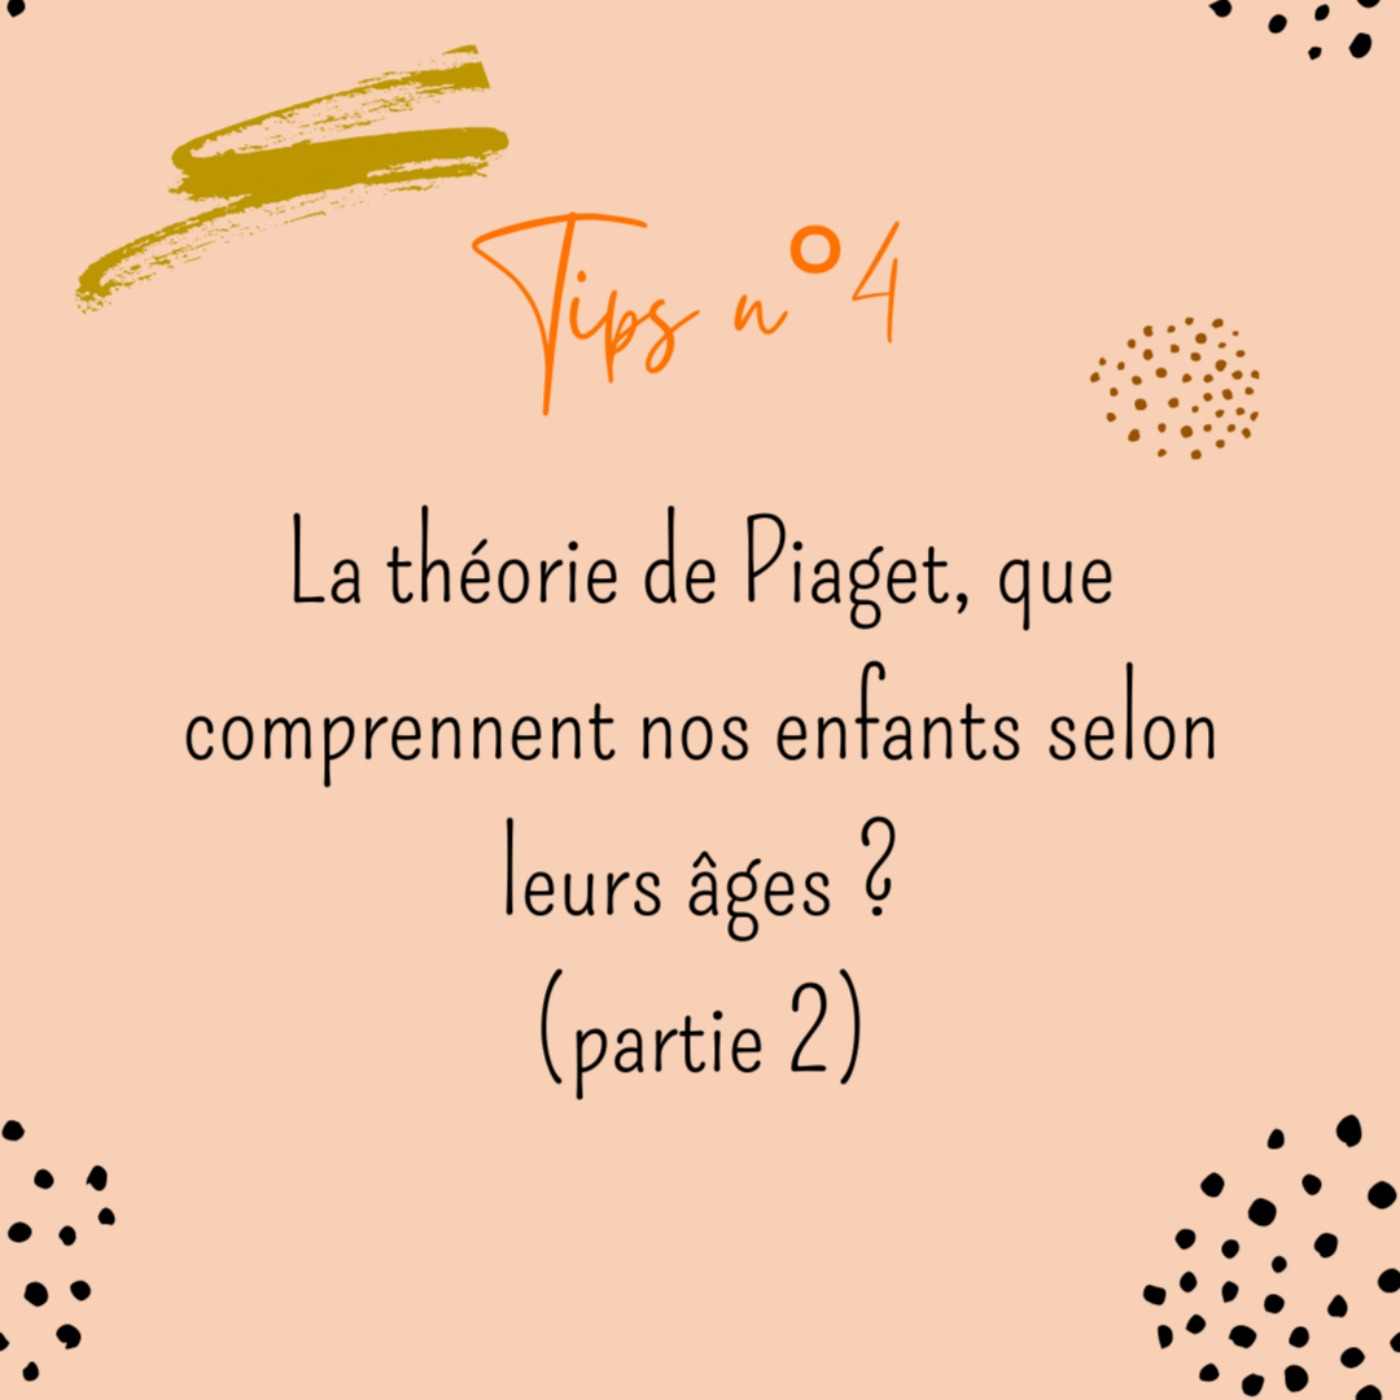 Tips n° : la théorie de Piaget, que comprennent nos enfants selon leurs âges ? (partie 2)